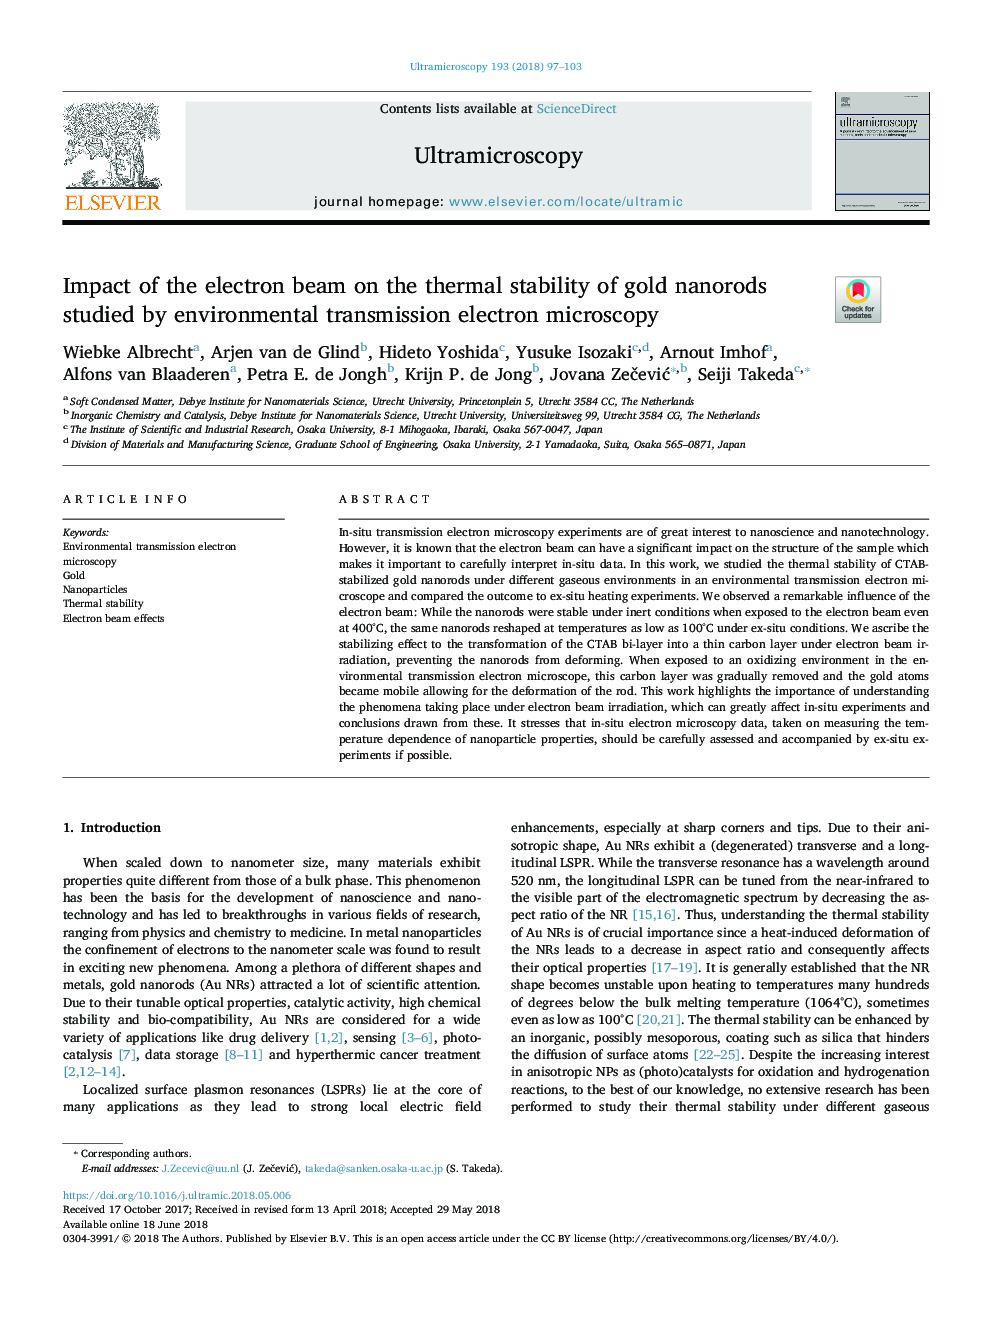 اثر پرتو الکترون بر پایداری حرارتی نانوسایل طلا توسط میکروسکوپ الکترونی انتقال محیطی مورد مطالعه قرار گرفت 